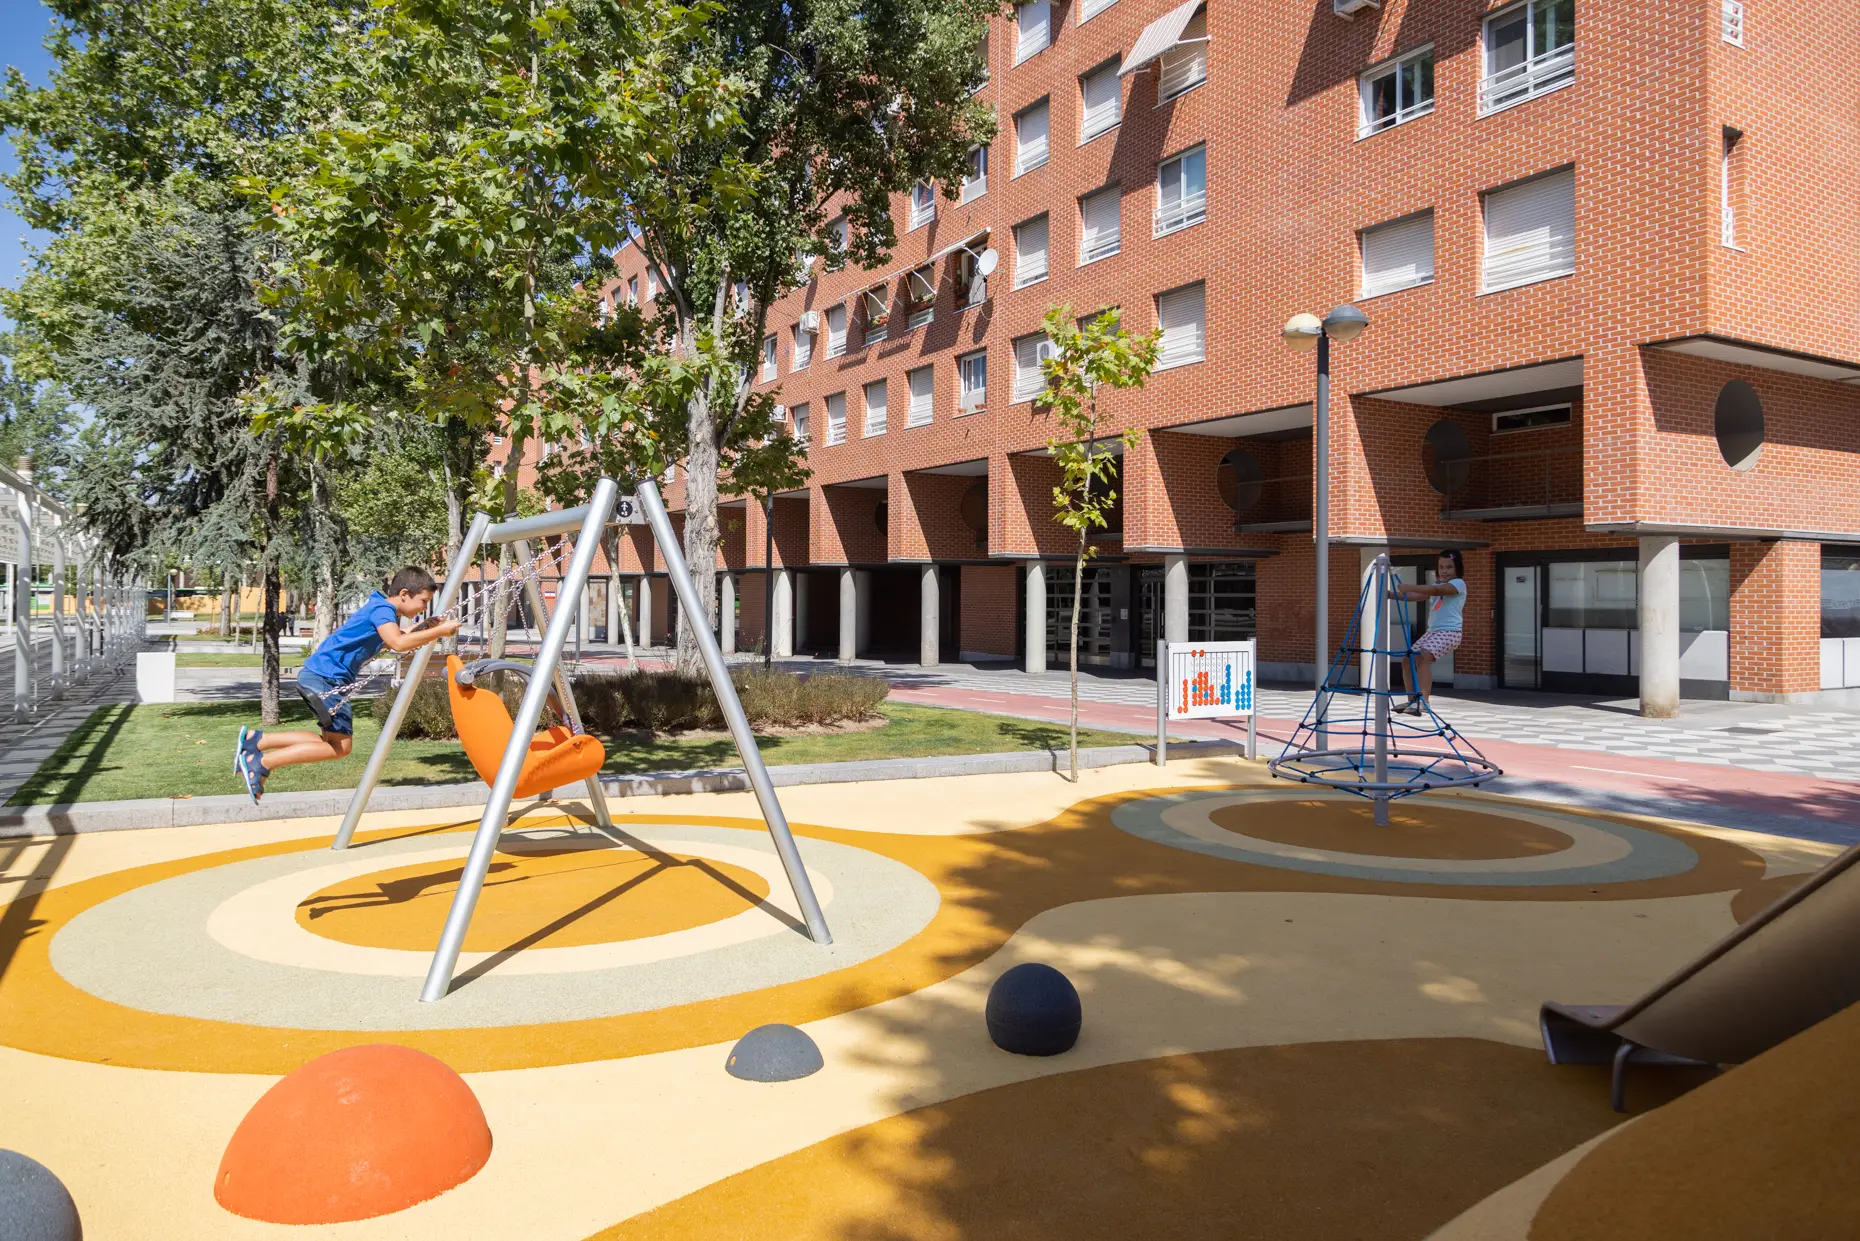 Área de juegos para niños. - Parque Central de Santiago